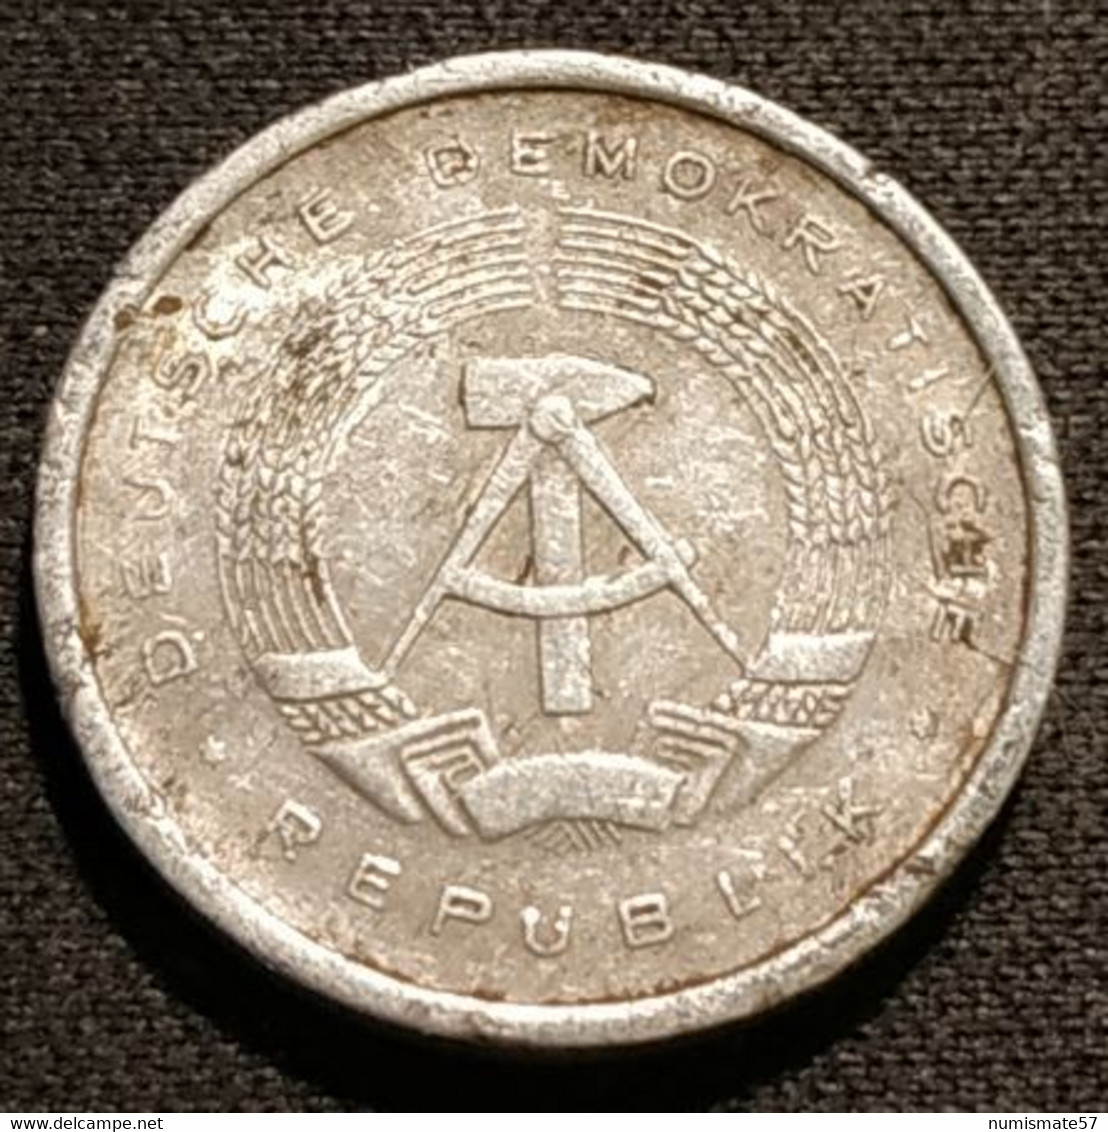 RDA - ALLEMAGNE - GERMANY - 5 PFENNIG 1980 A - KM 9.2 - 5 Pfennig